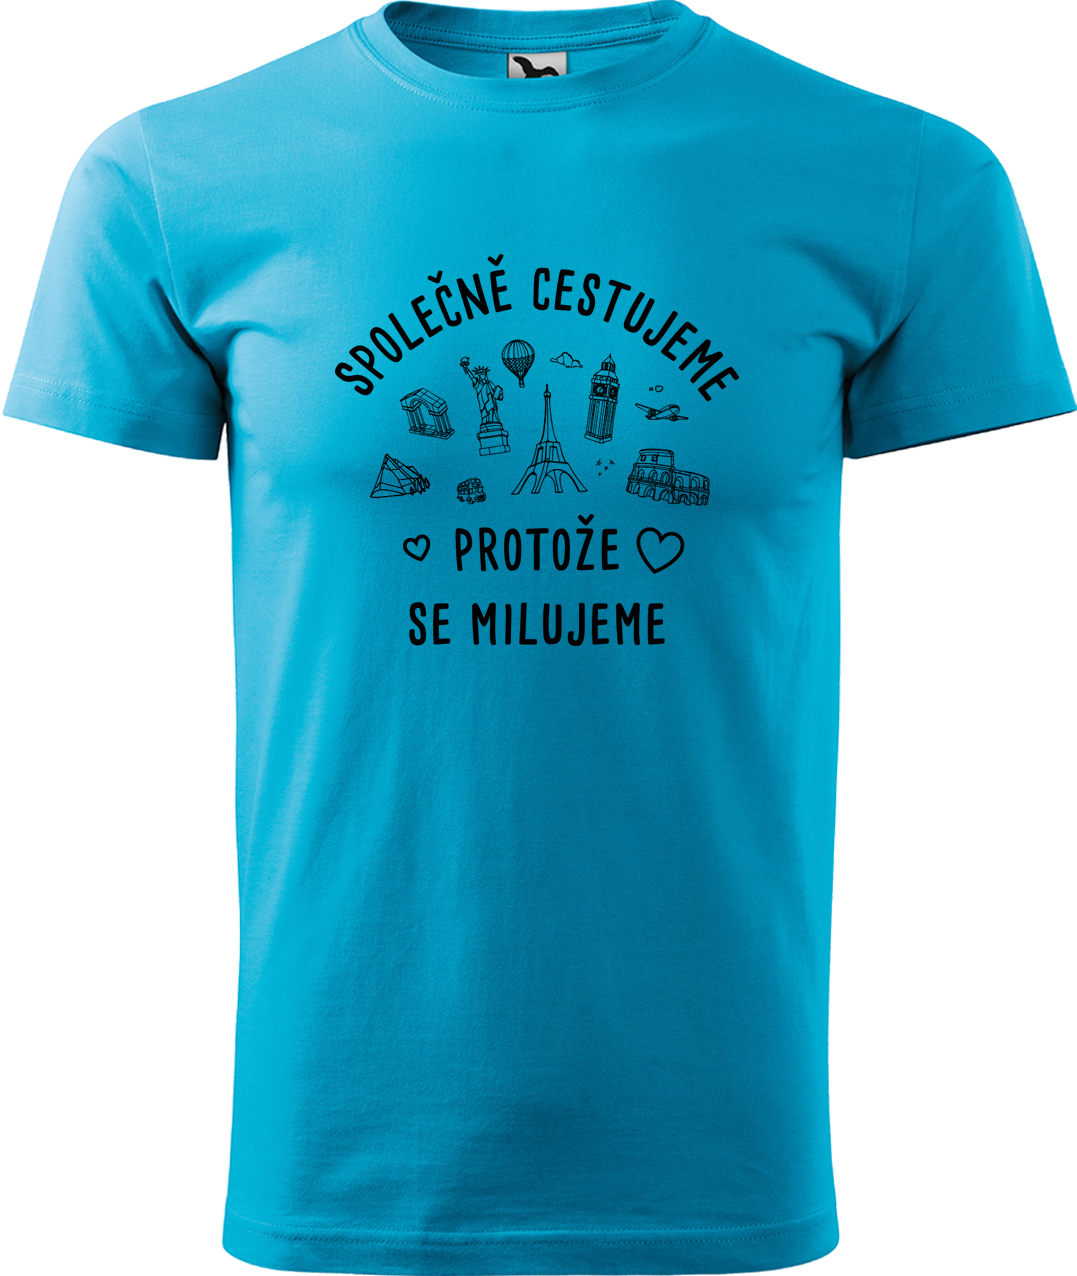 Pánské cestovatelské tričko - Společně cestujeme protože se milujeme Velikost: L, Barva: Tyrkysová (44), Střih: pánský